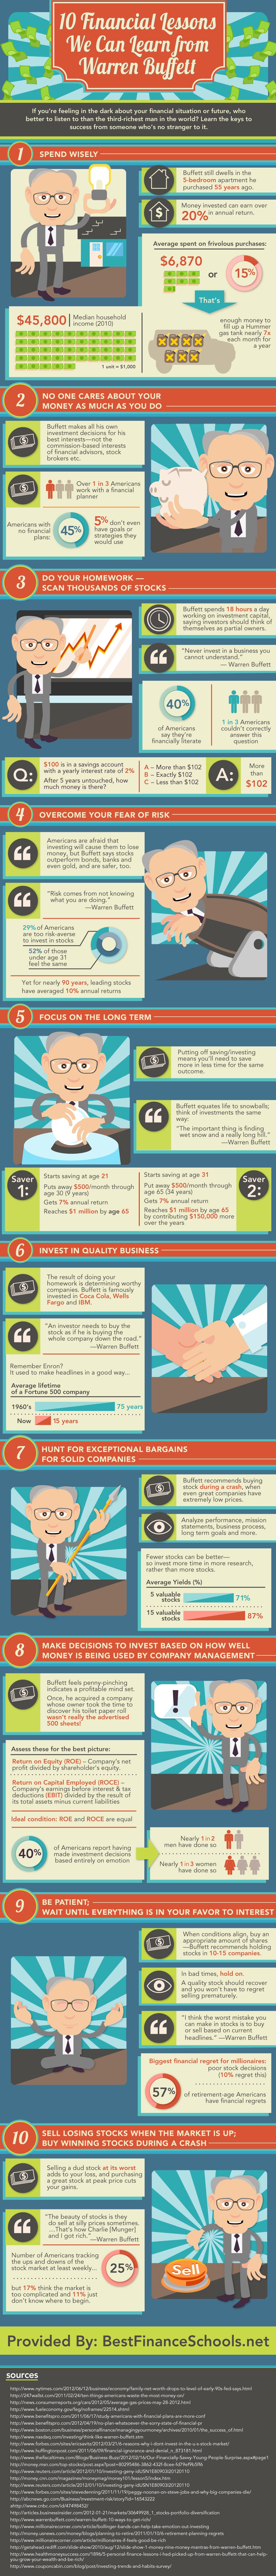 Warren-Buffett-Financial-Lessons-Infographic